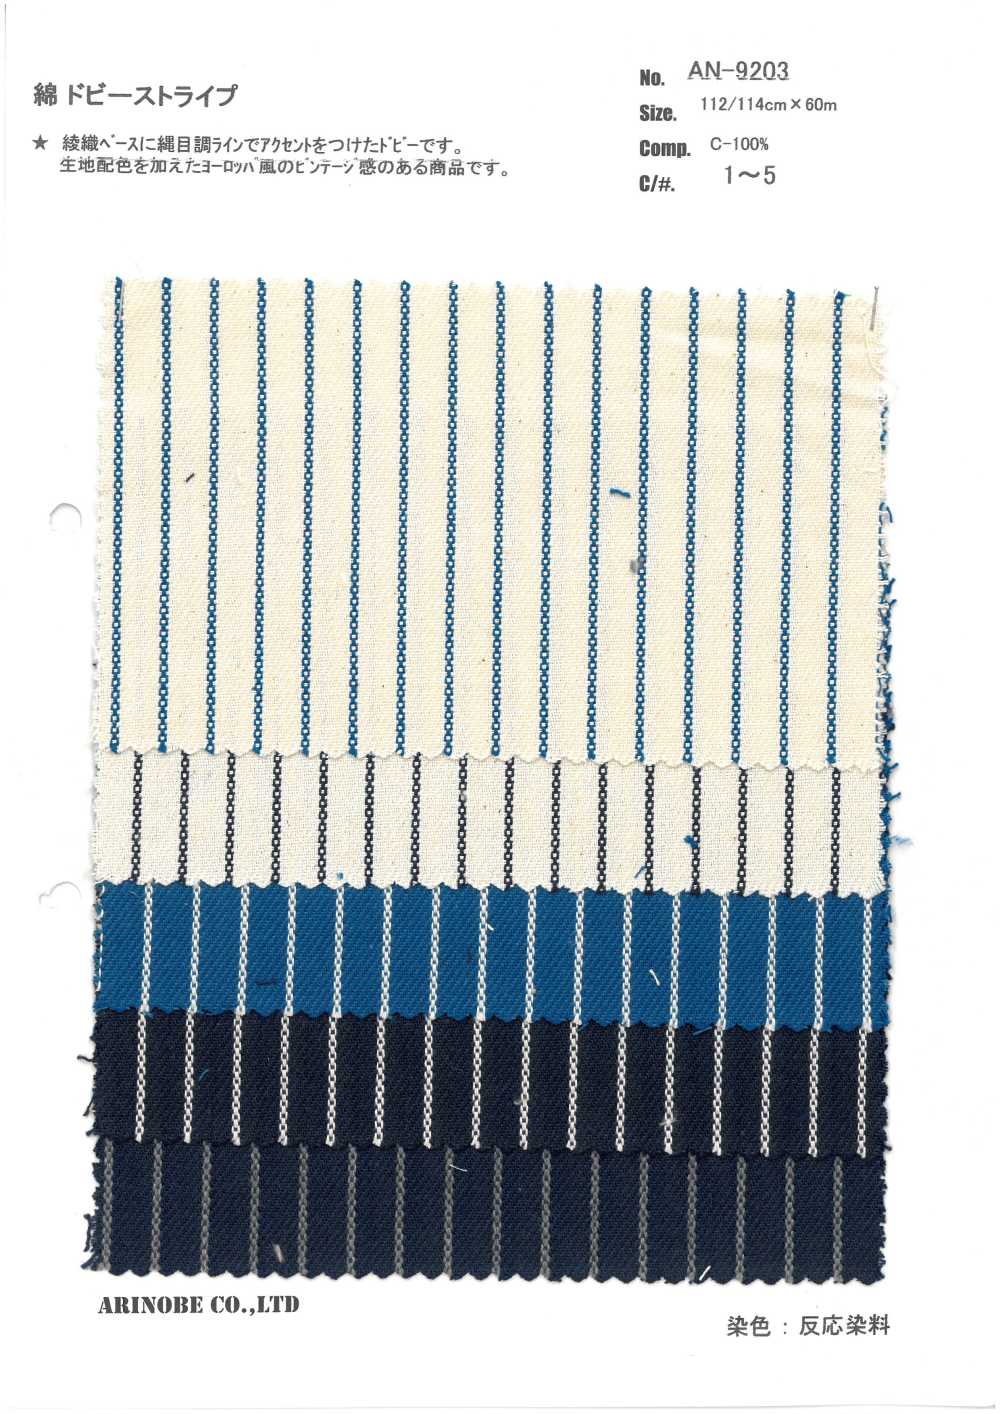 AN-9203 Baumwoll-Dobby-Streifen[Textilgewebe] ARINOBE CO., LTD.